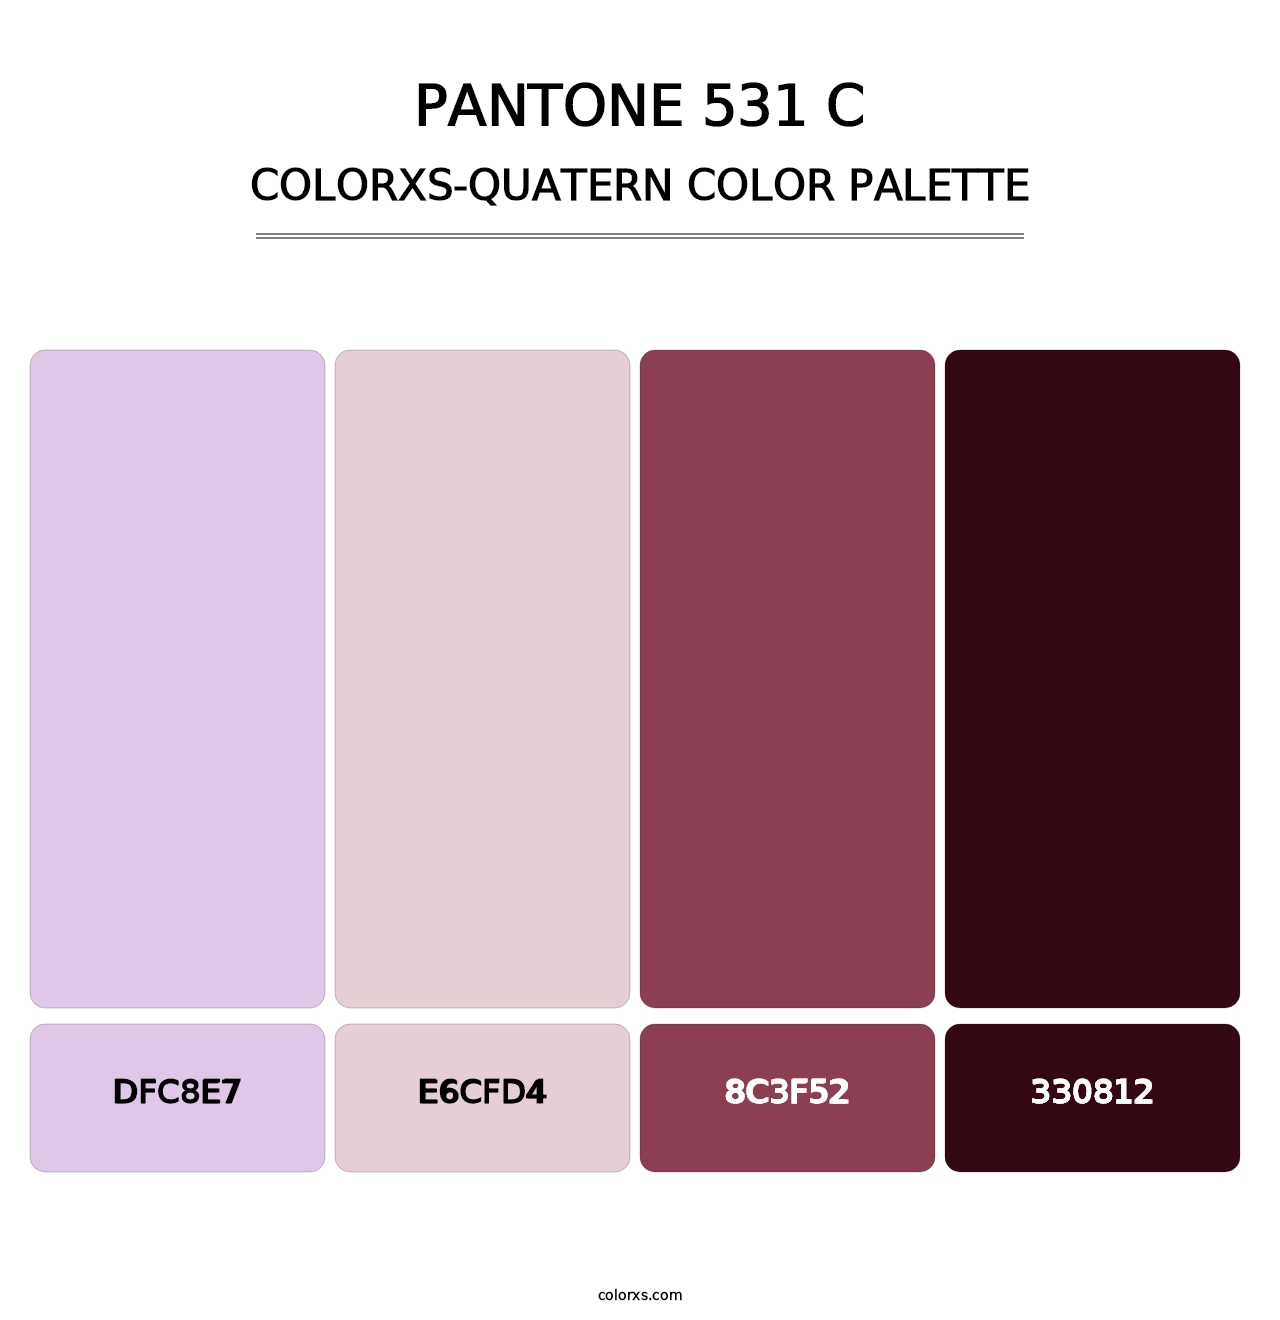 PANTONE 531 C - Colorxs Quatern Palette